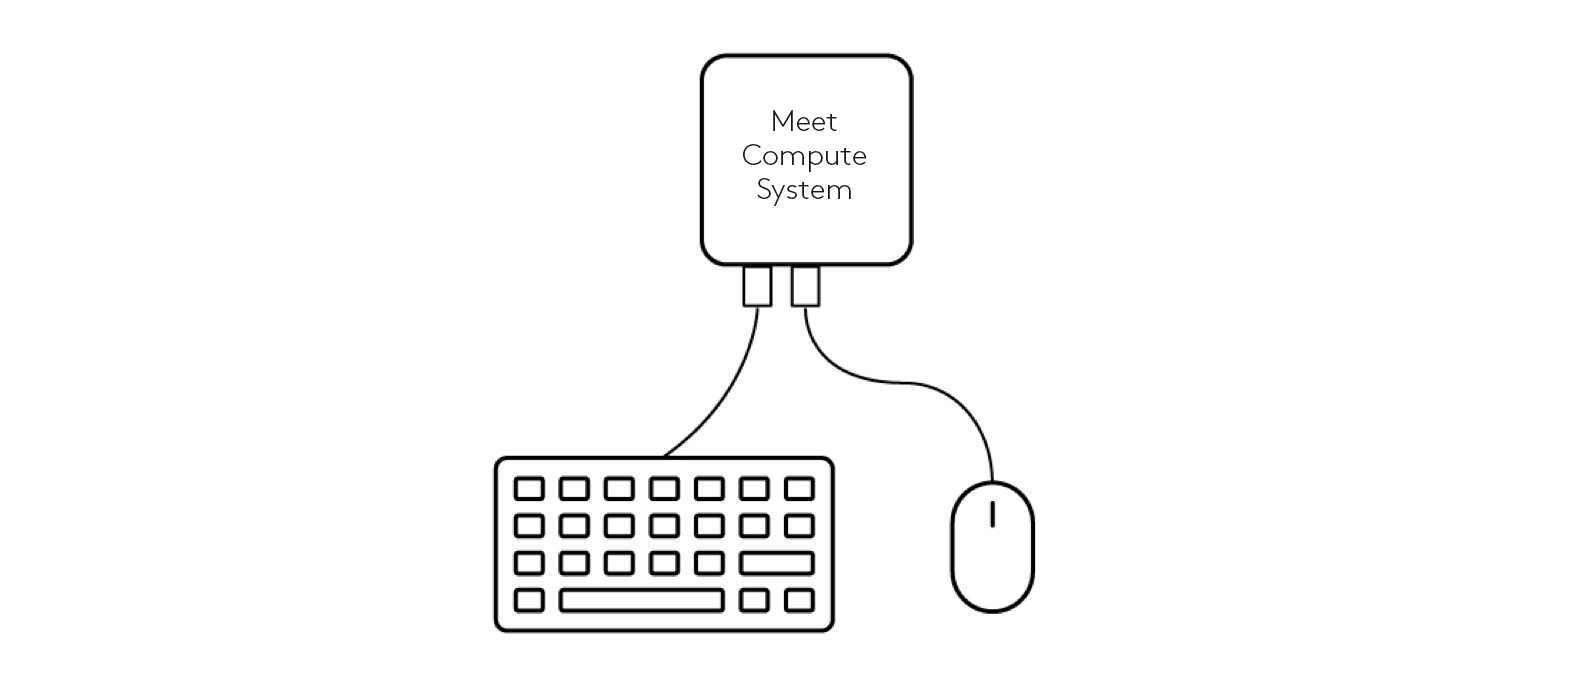 Diagrama de conexiones de teclado y mouse a Meet Compute System